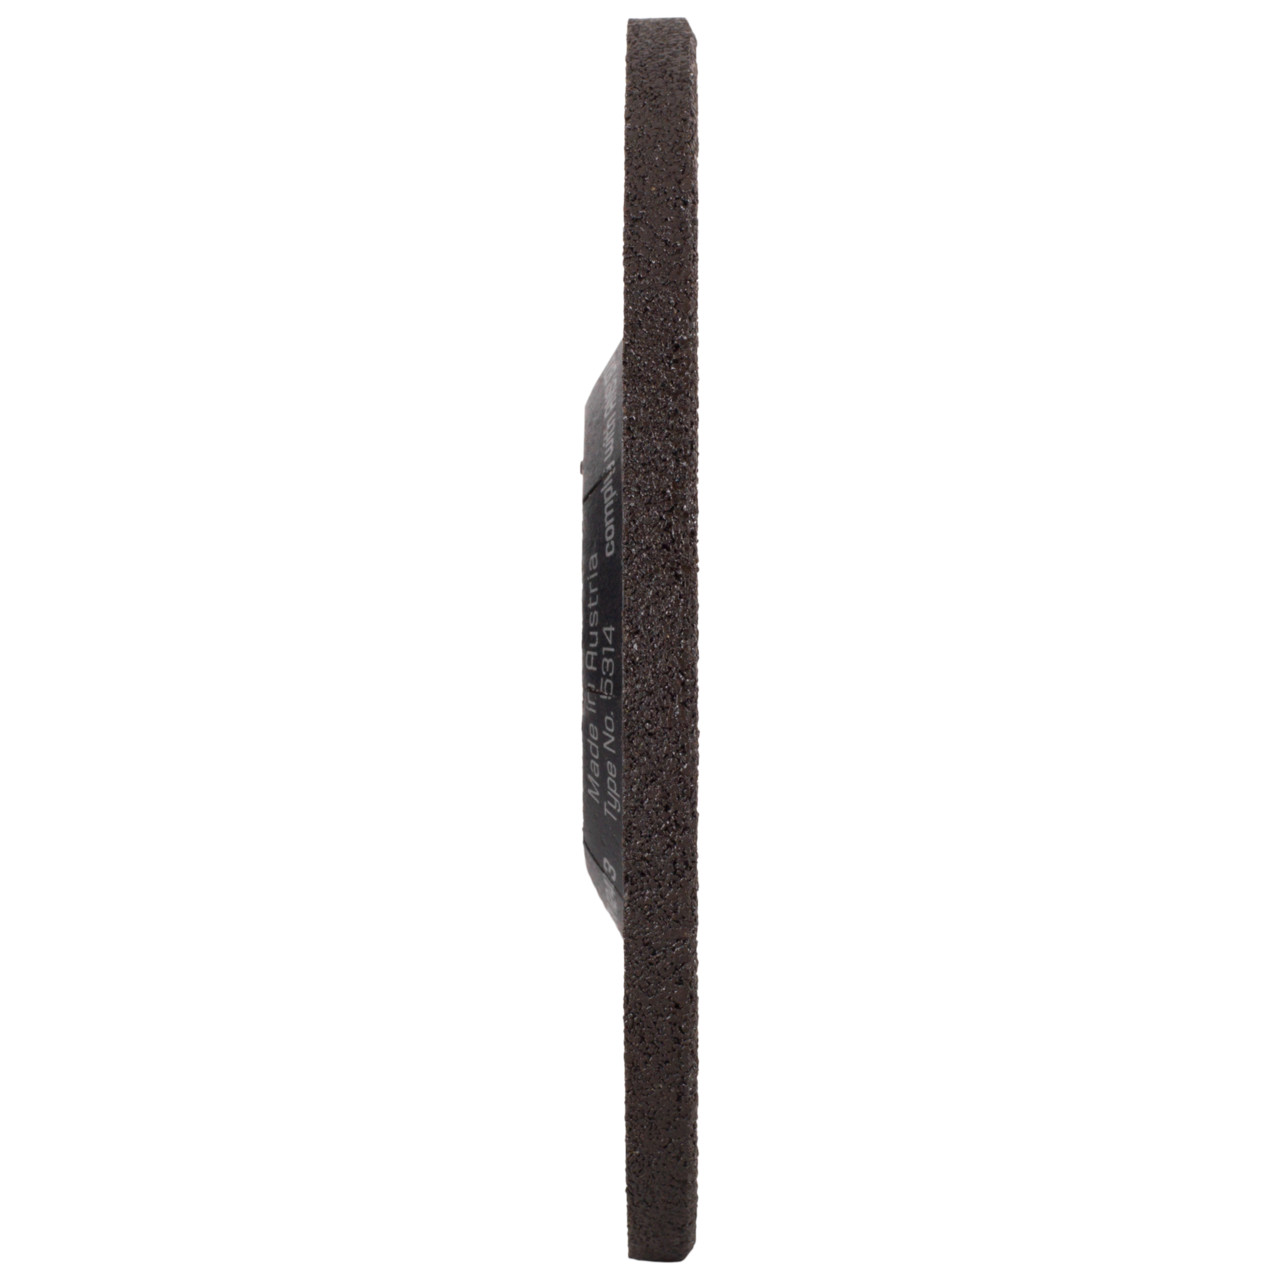 Tyrolit Grove slijpschijf DxUxH 150x7x22,23 LONGLIFE Z-MAX voor staal, vorm: 27 - offset uitvoering, Art. 34353686